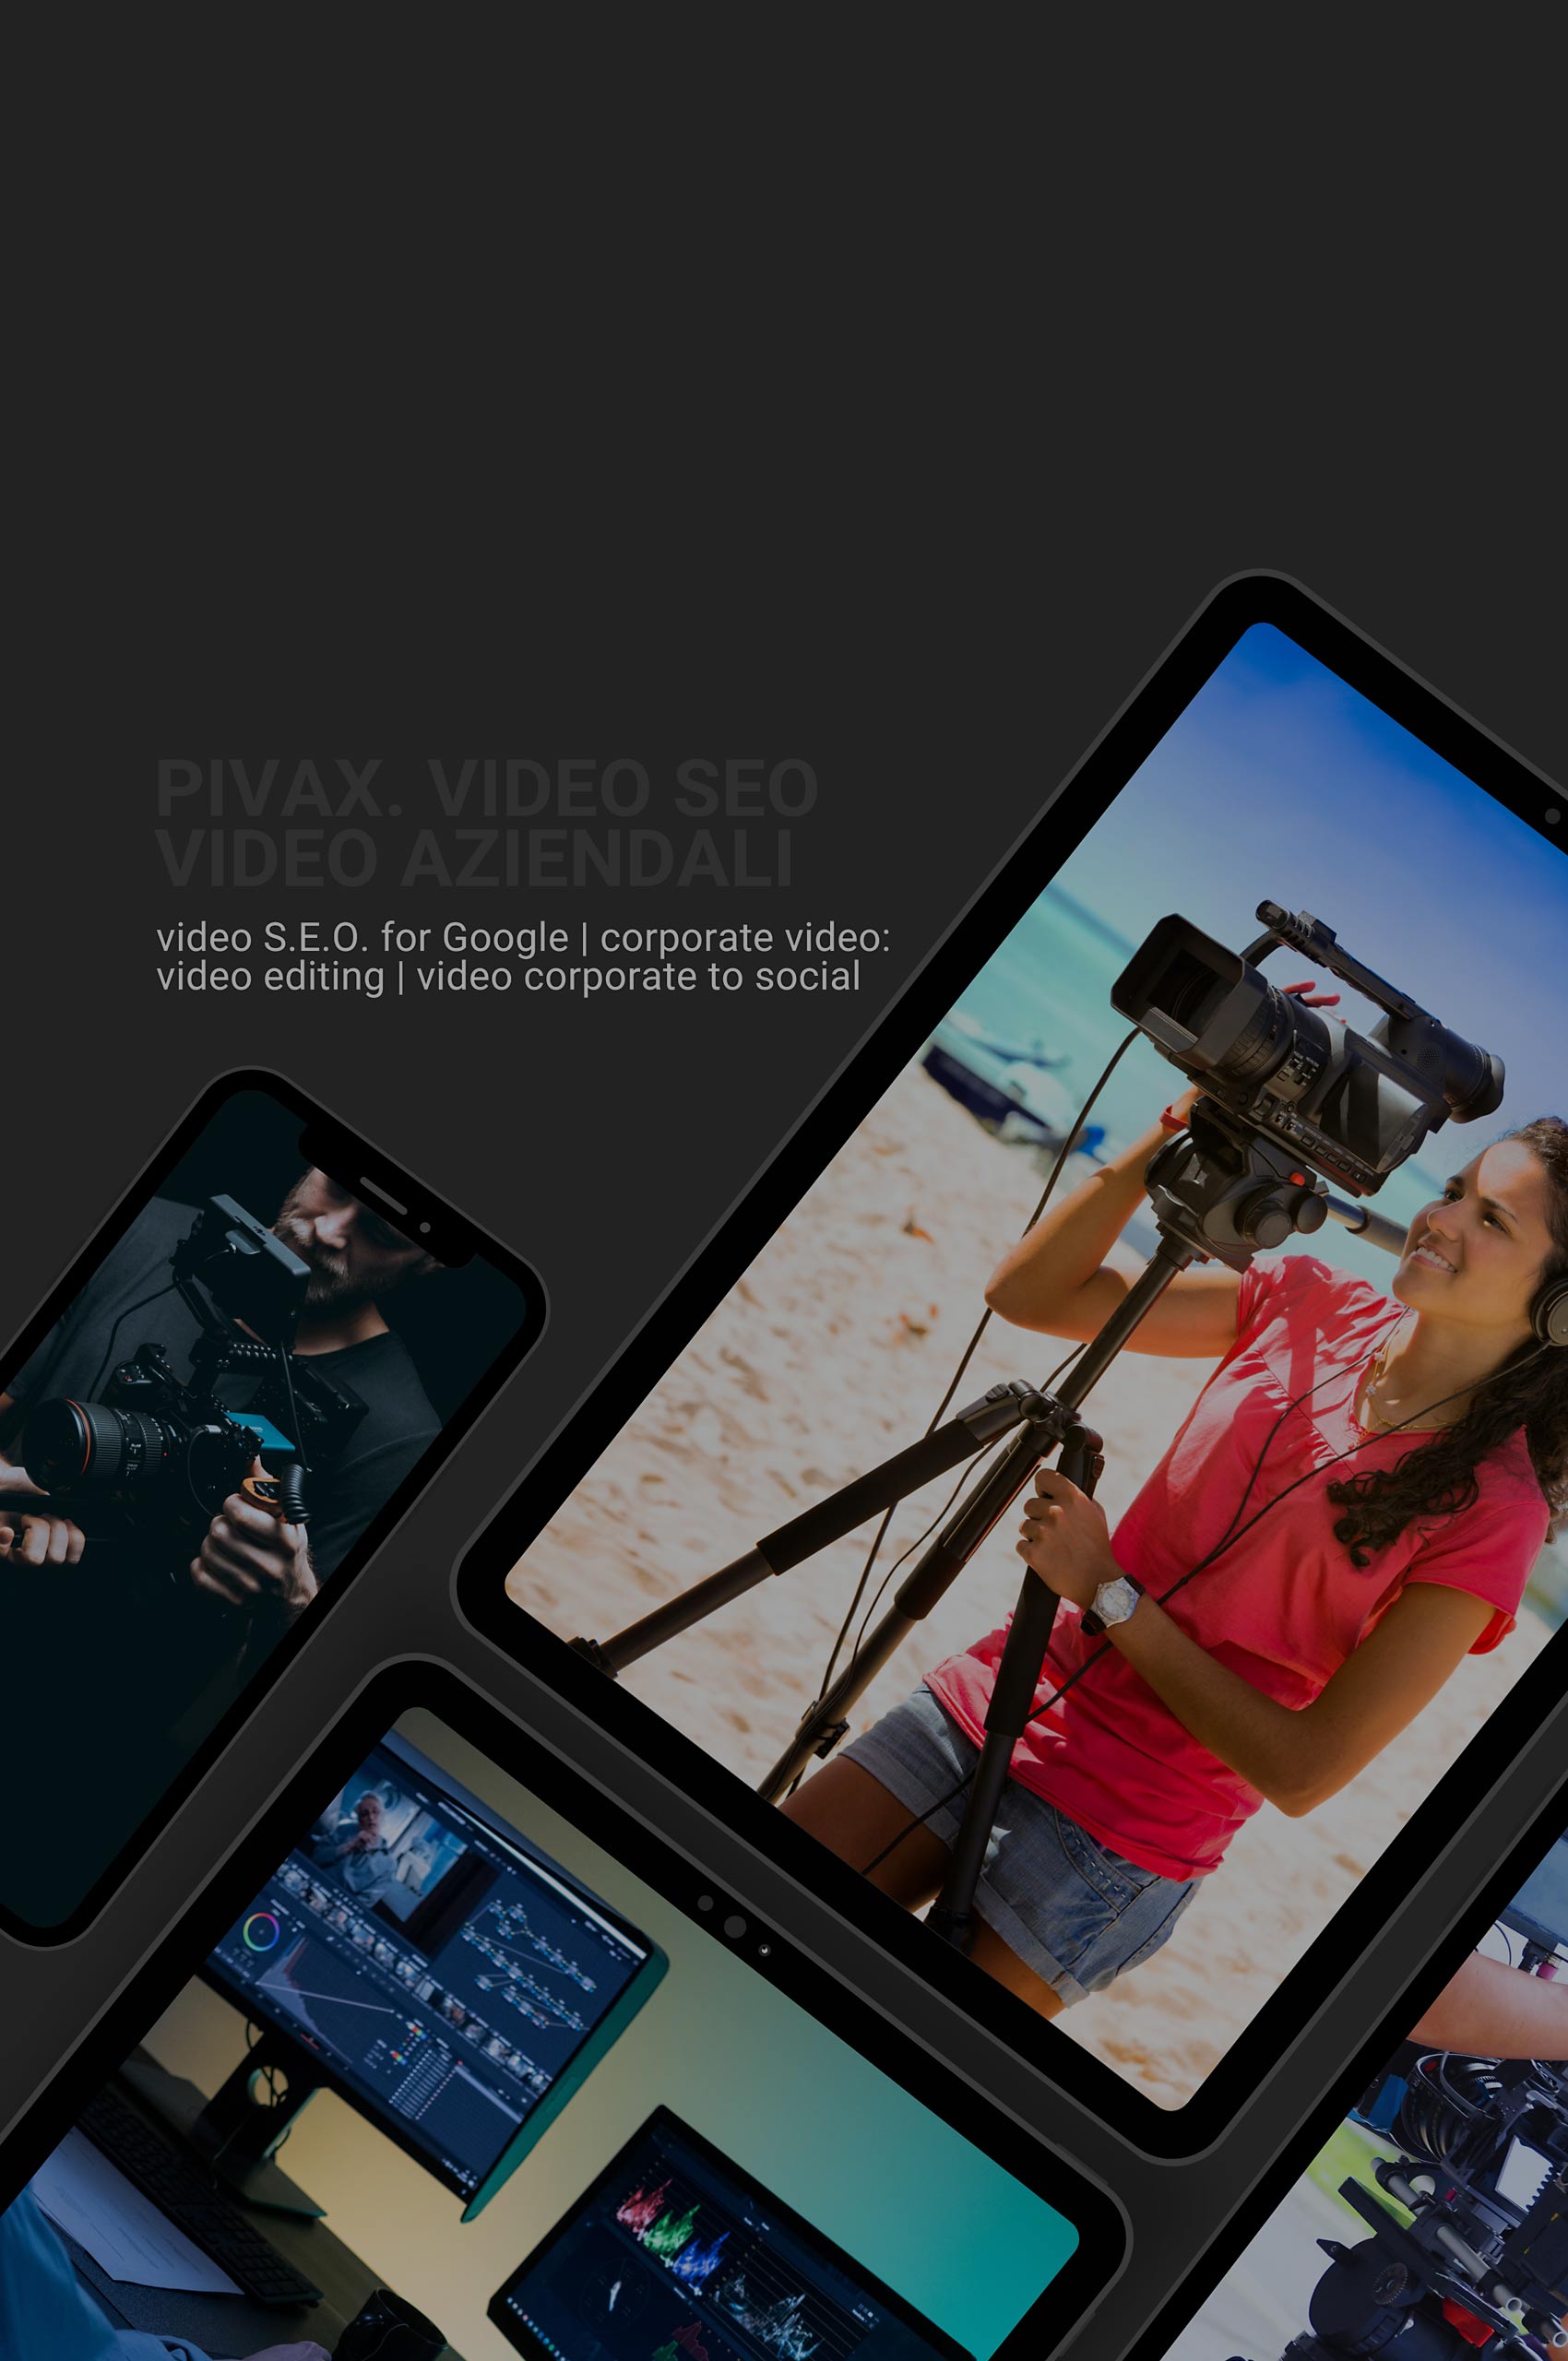 pivax.it video seo, video aziendali.